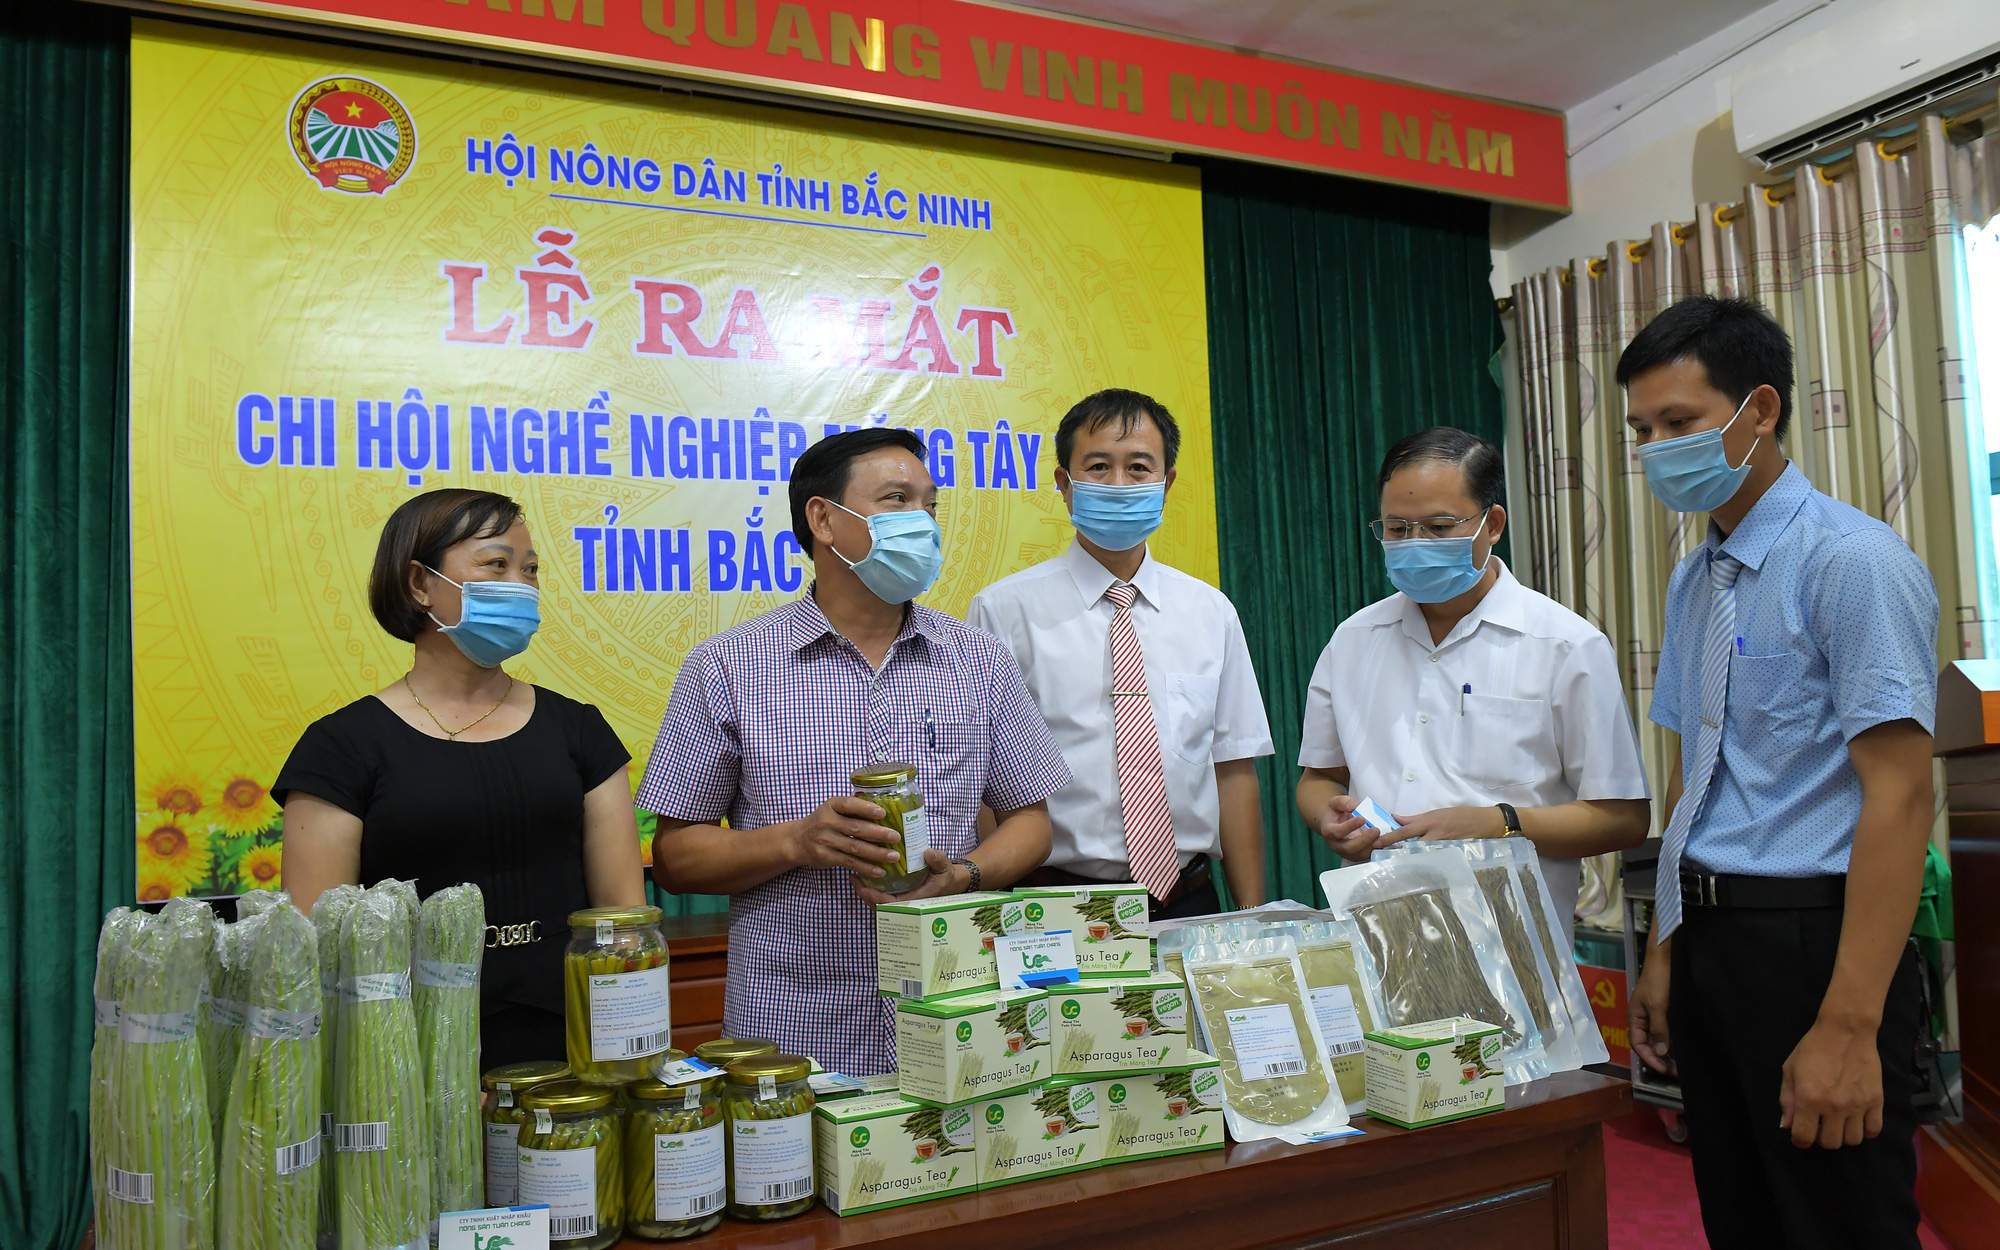 Bắc Ninh: Nông dân trồng măng tây xanh lập chi hội nghề nghiệp, quyết chơi lớn với loại "rau hoàng đế" 